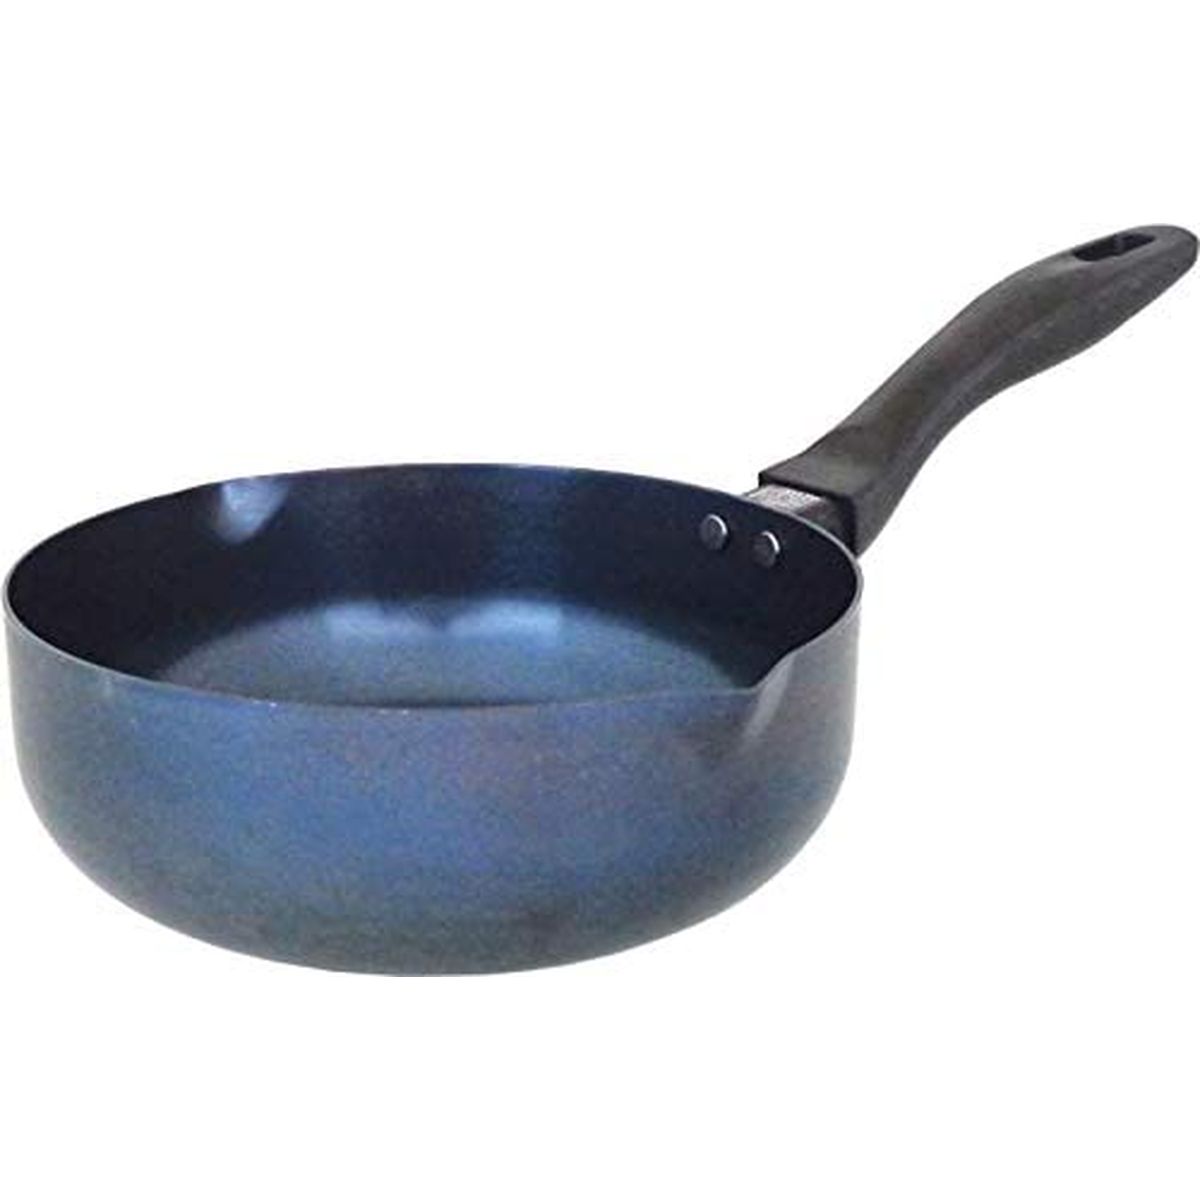 鉄フライパン片手鍋使いやすいパラパラ炒飯パン20cm